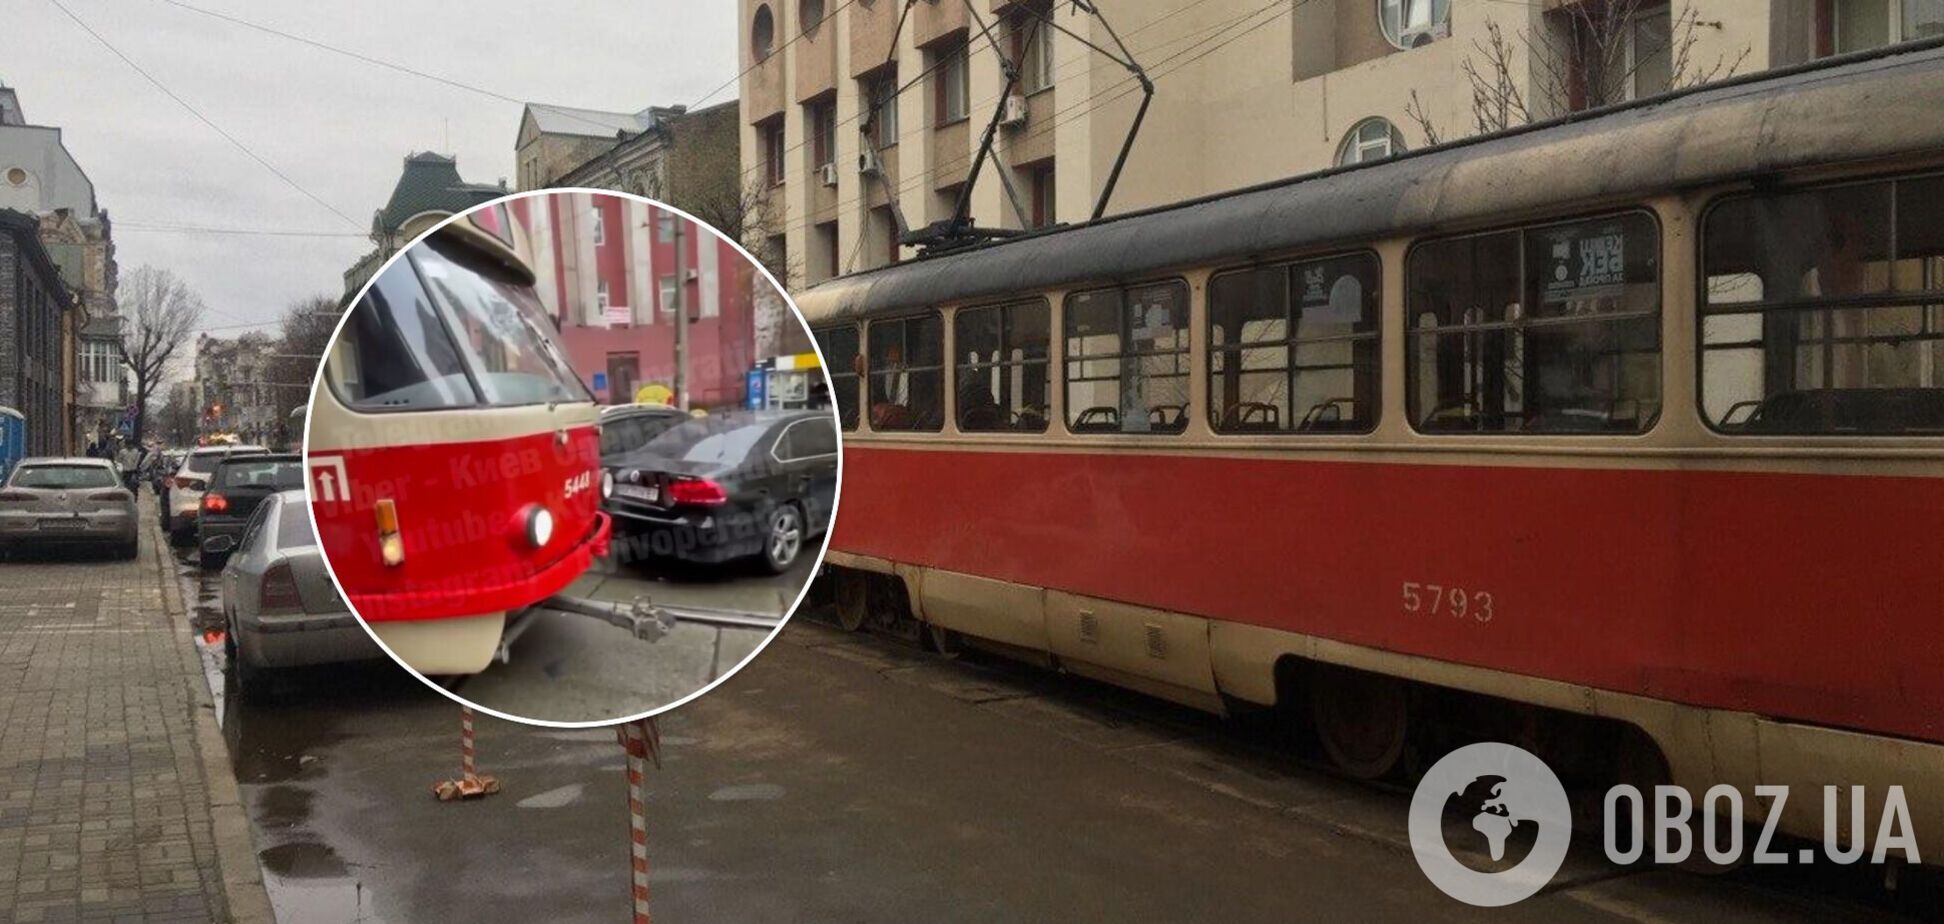 Инцидент произошел на улице Полтавской